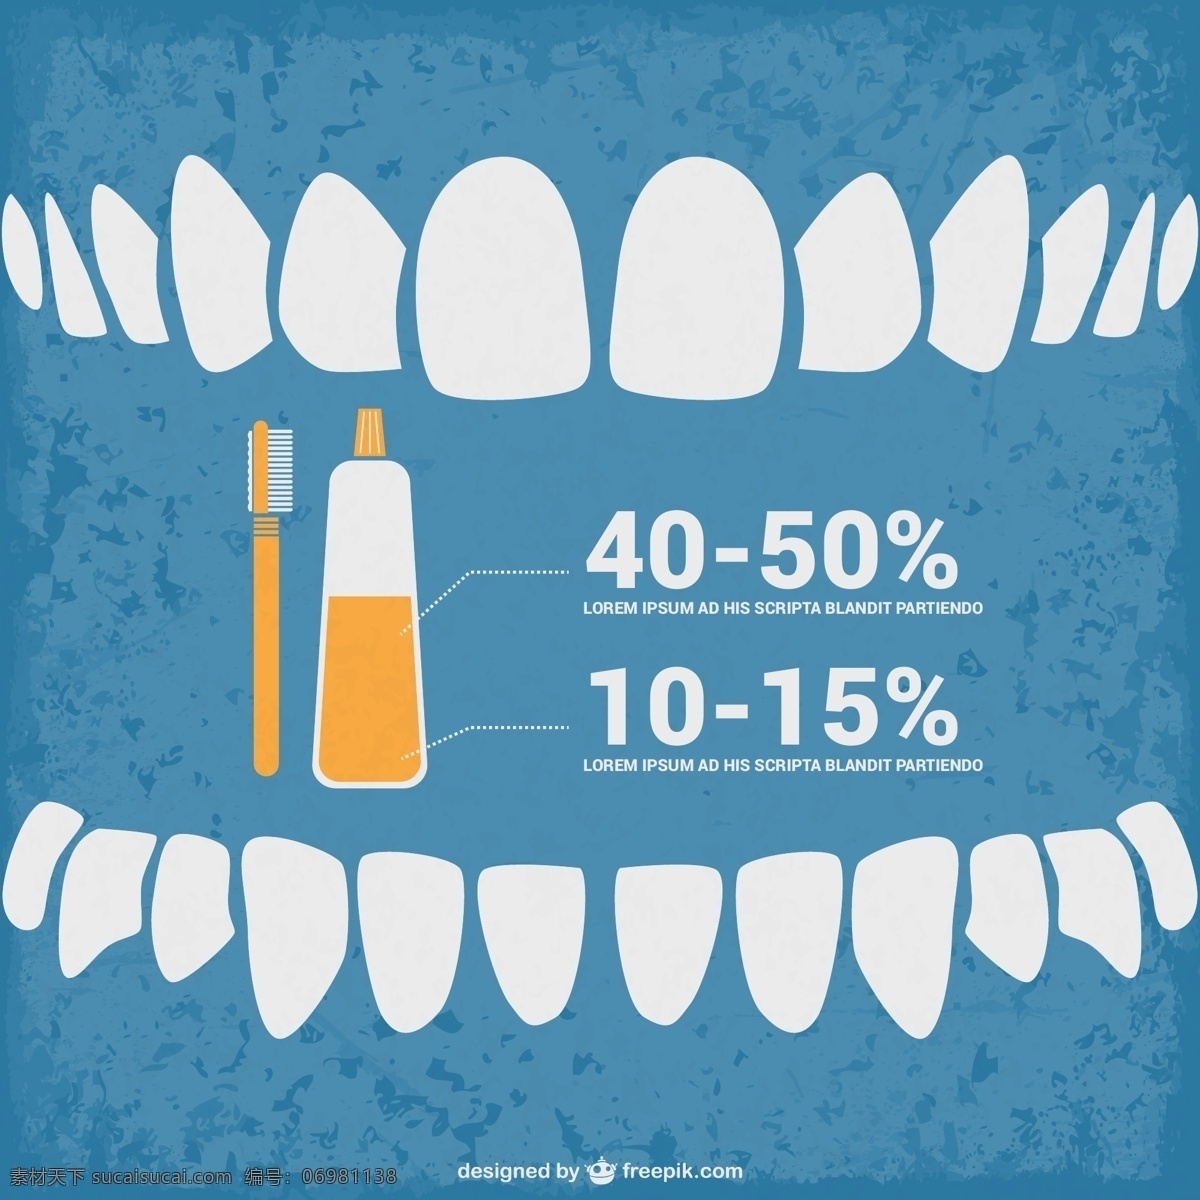 信息 infograhic 牙医 图表 业务 图标 纹理 医疗 模板 健康 蓝 垃圾 布局 图形 演示 牙科 口腔 图表设计 白色